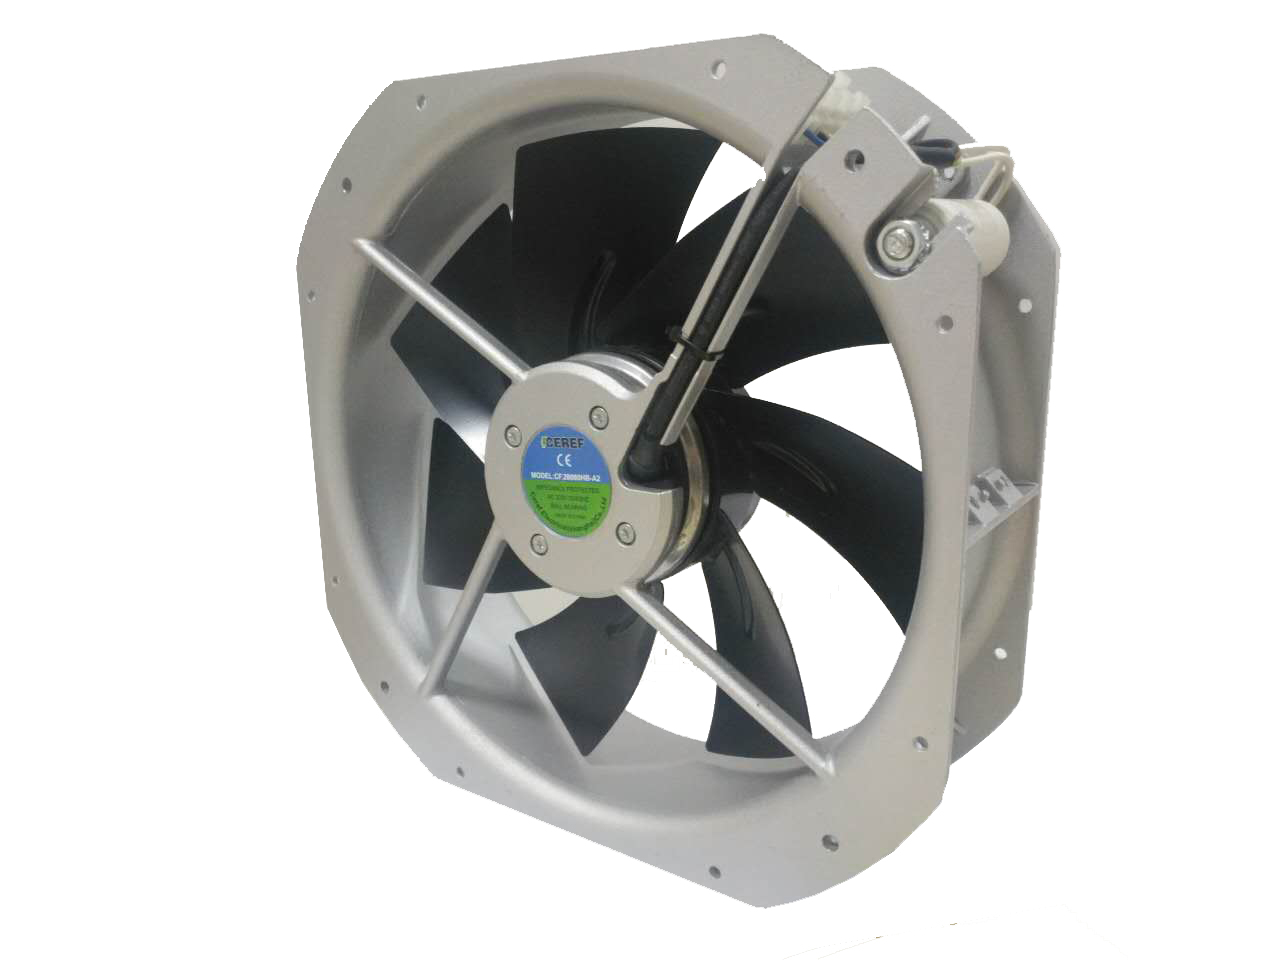 替代卡固充电桩风机 替代威图柜风机 环境监测设备风扇 CF.28080HB-A2 舍利弗CEREF